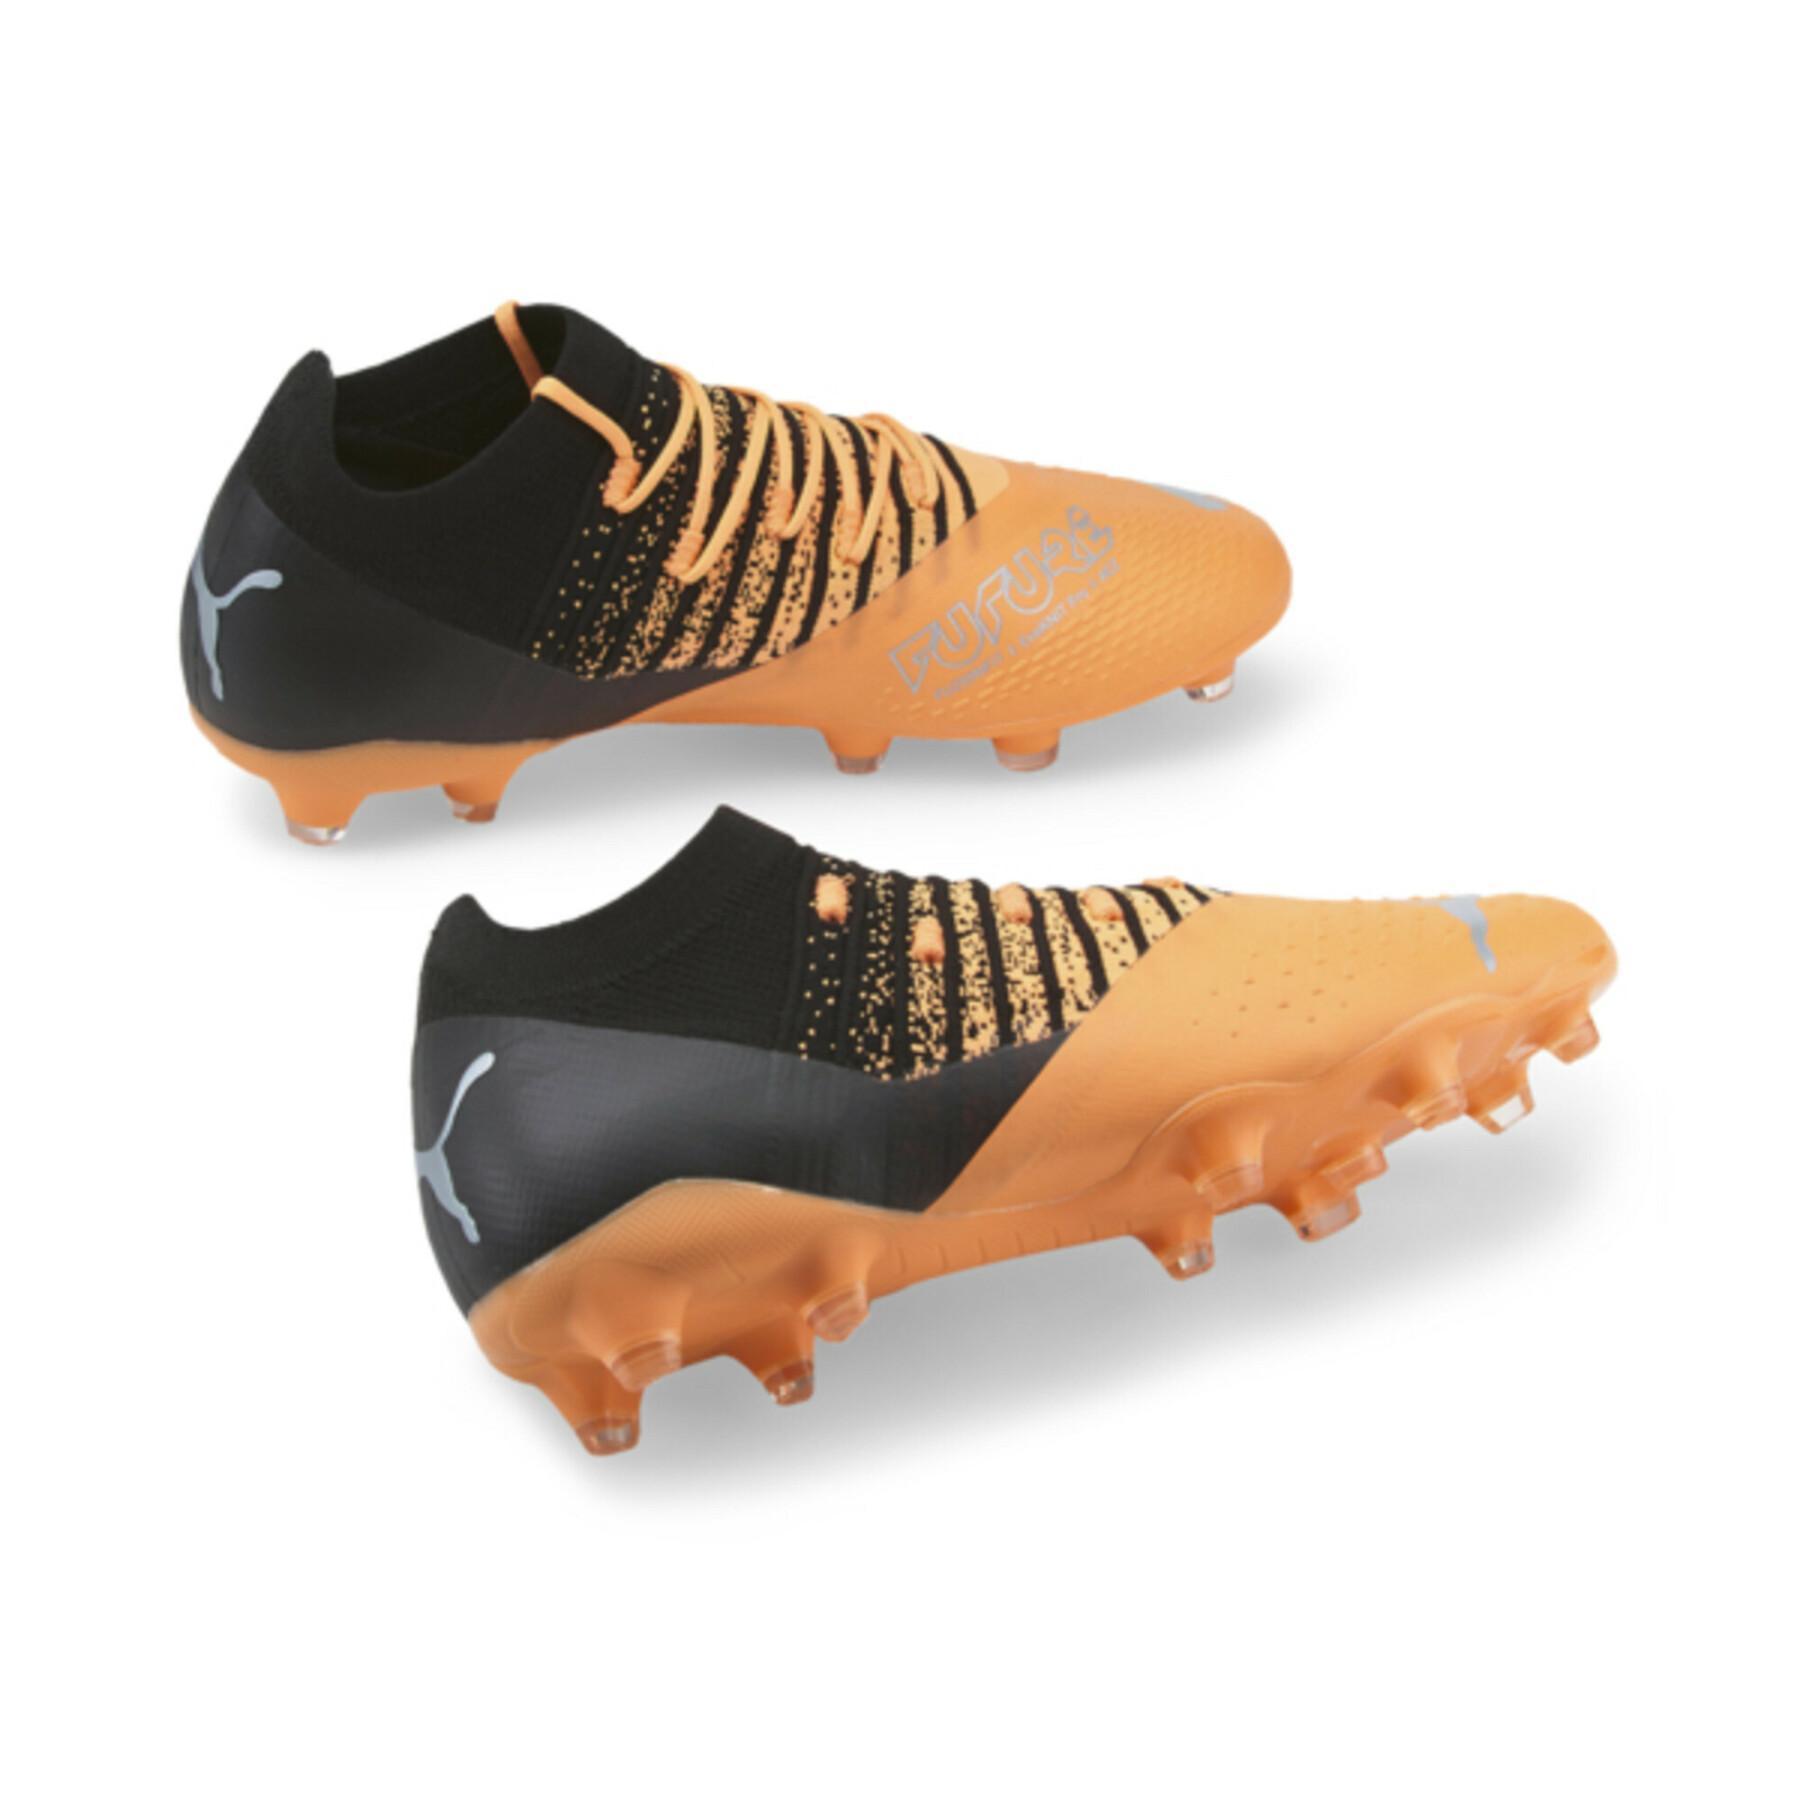 Soccer shoes Puma FUTURE Z 3.3 FG/AG - Instinct Pack